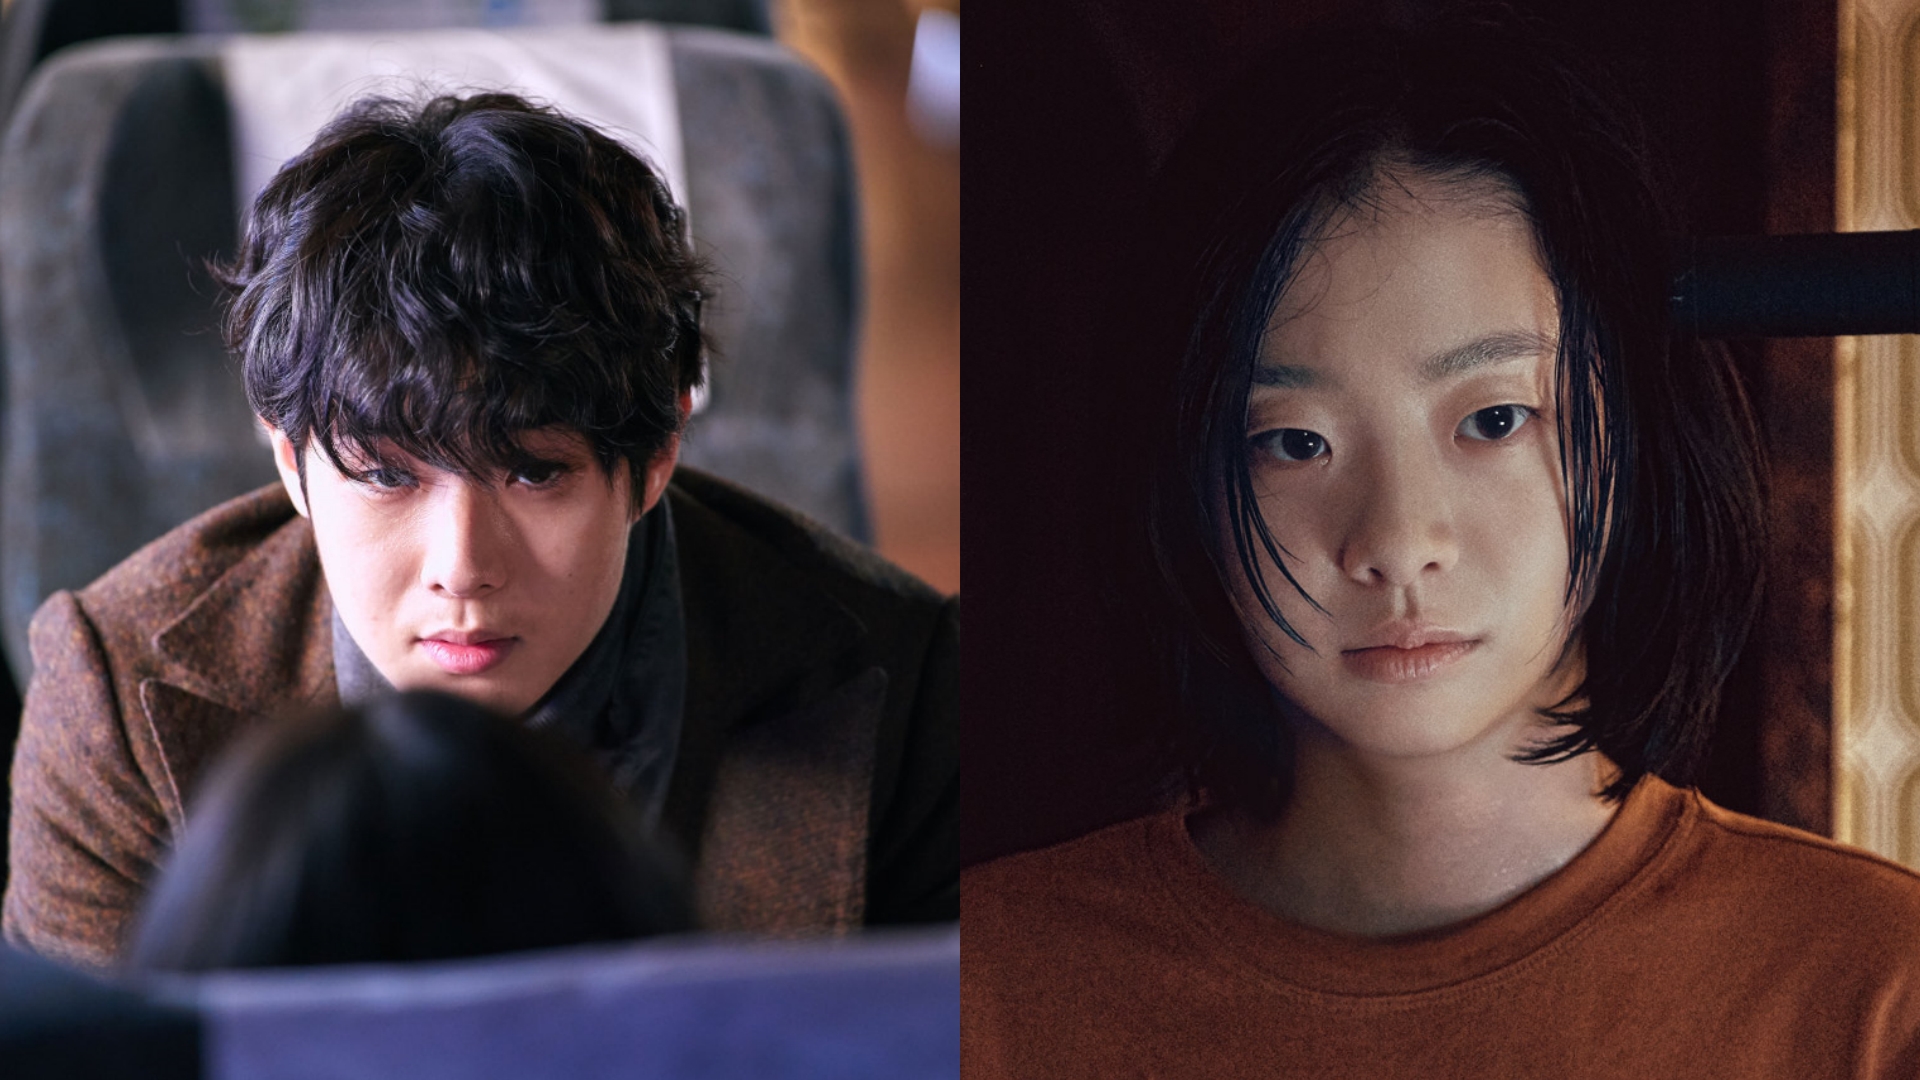 Cặp đôi giống hệt Hyun Bin - Son Ye Jin: 'Choảng' xong lại quay sang yêu nhau, liệu có hẹn hò như tiền bối? - ảnh 4